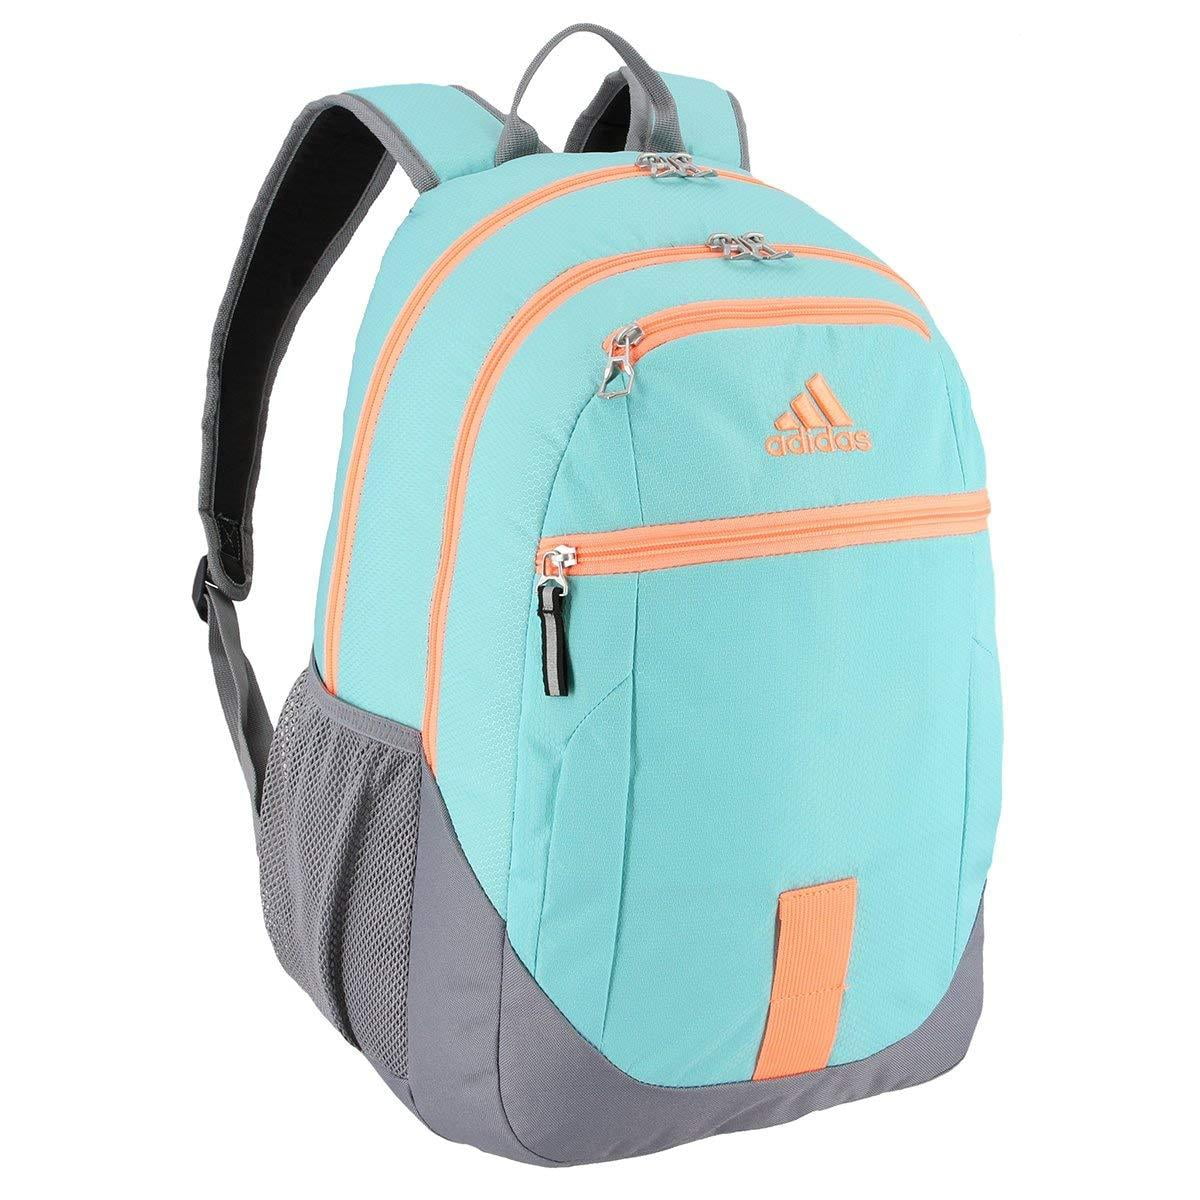 adidas foundation 3 backpack